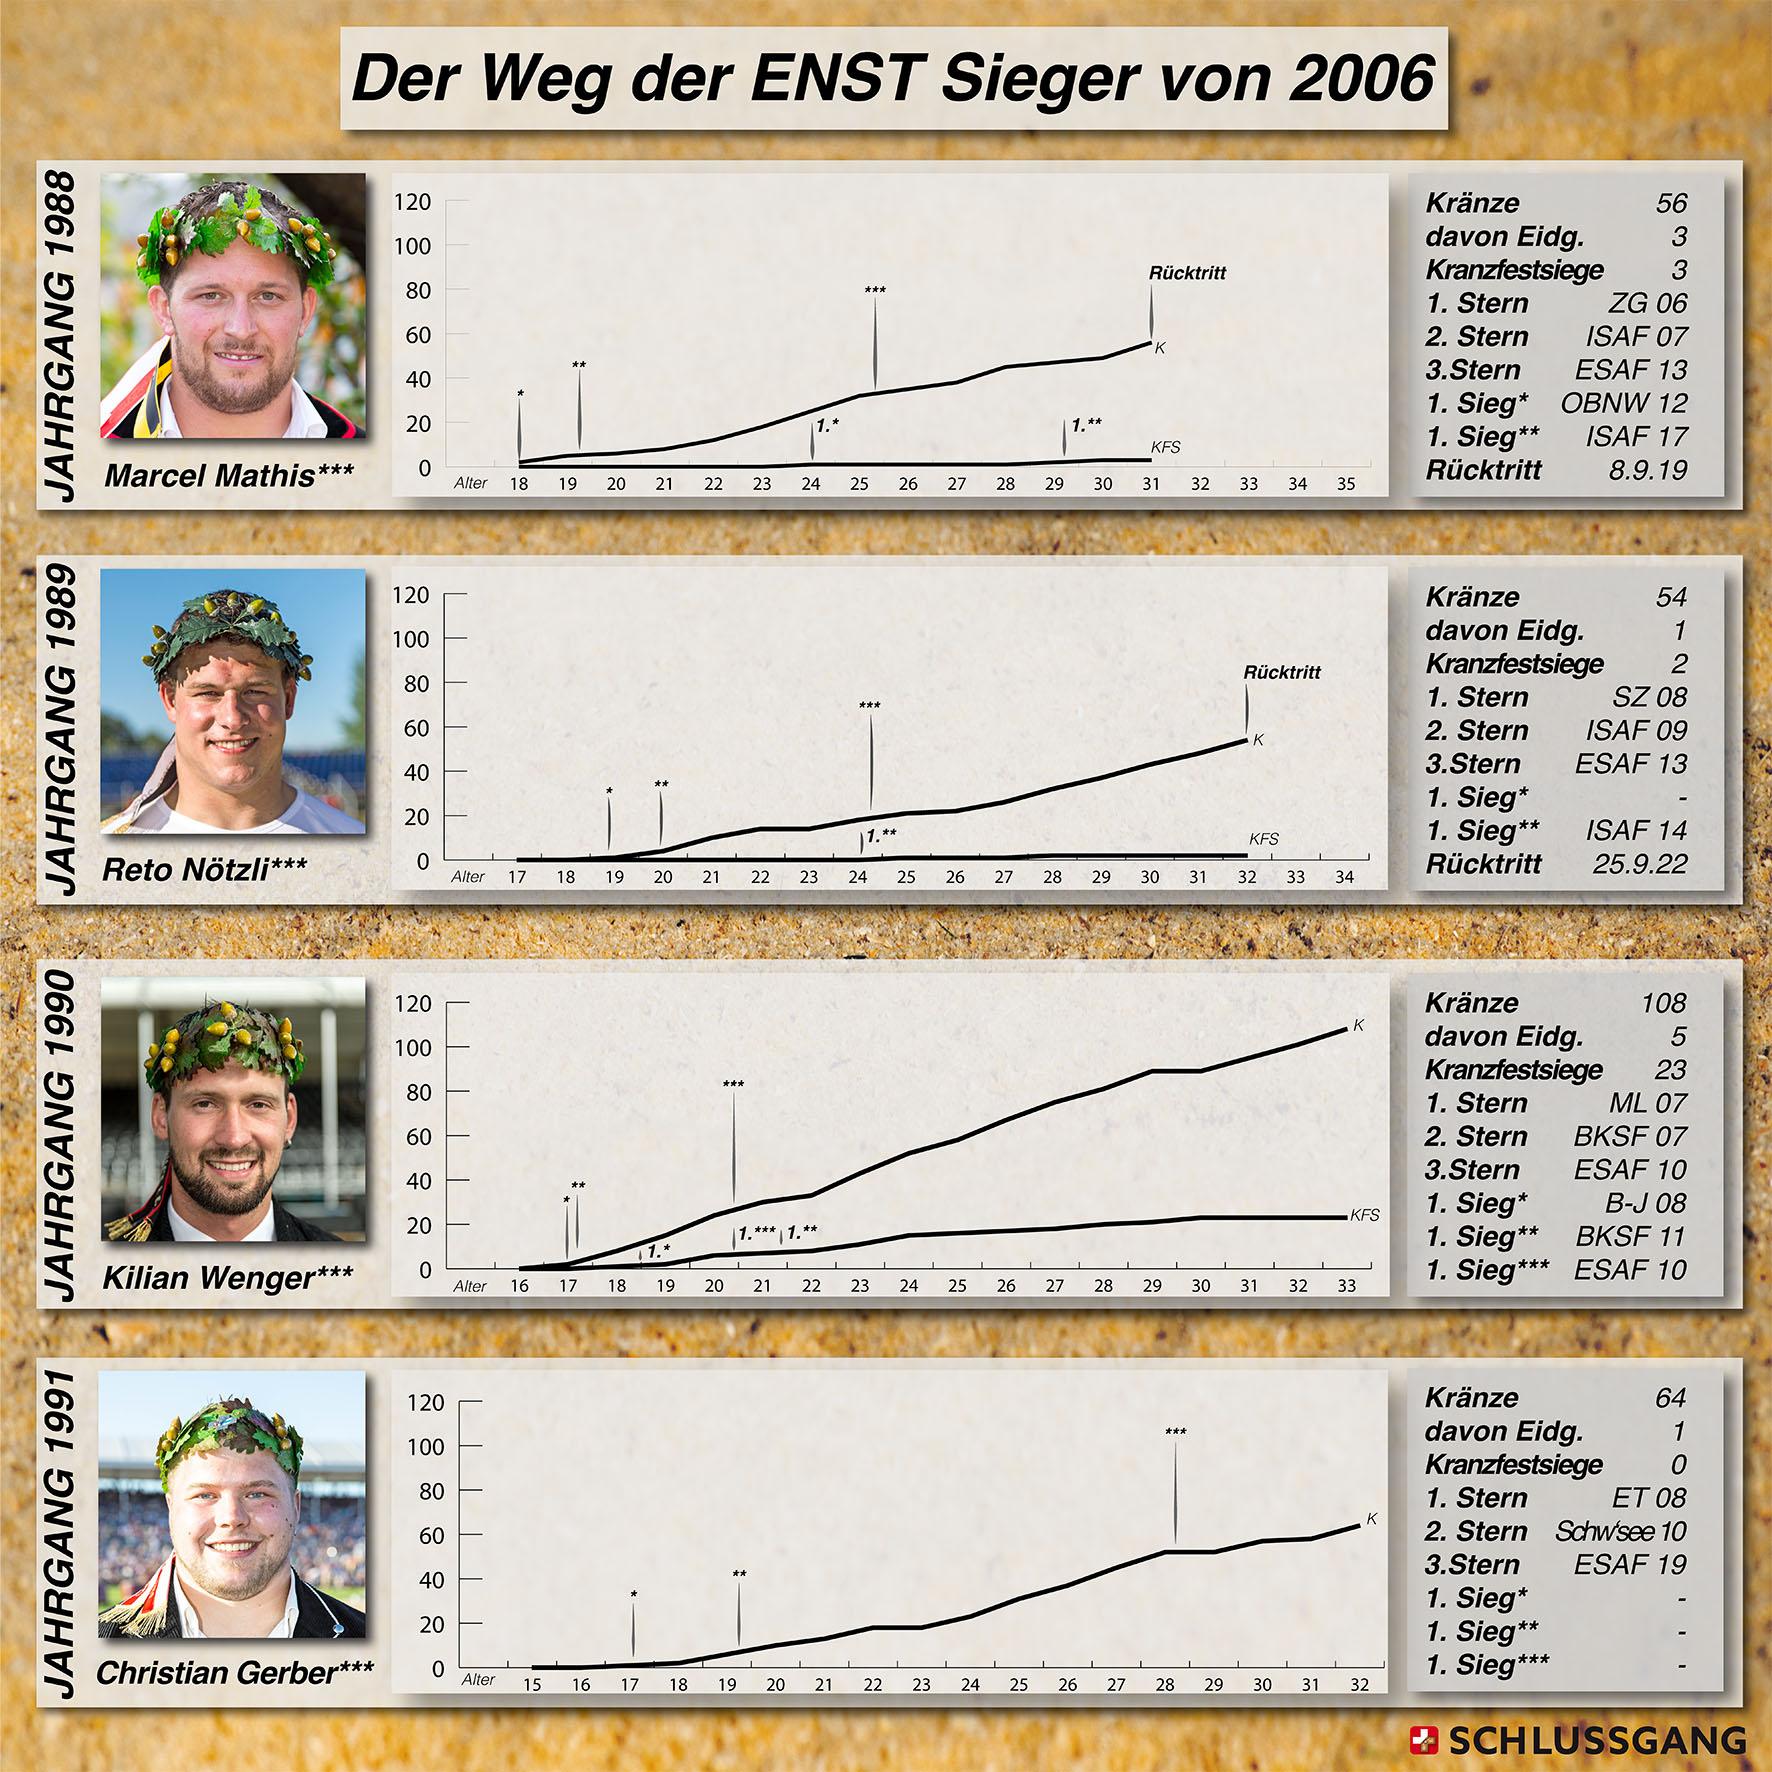 Auf einen Blick: Die schwingerische Laufbahn der ENST-Kategoriensiegen von 2006.